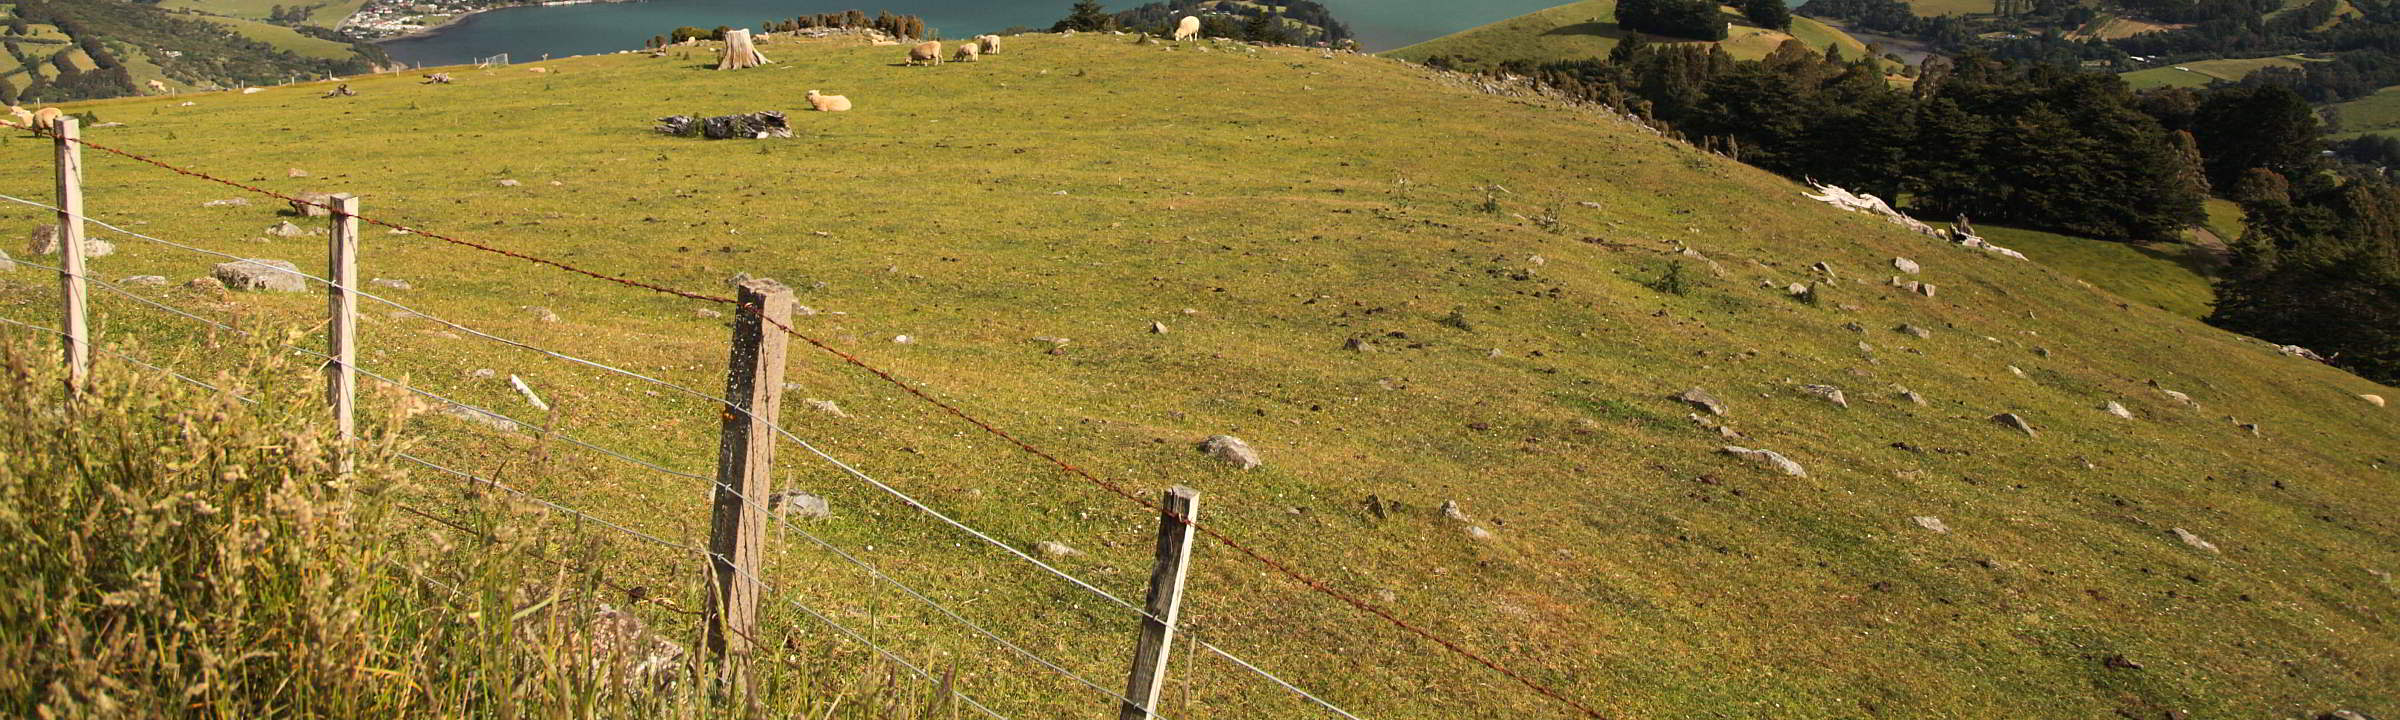 Zäune für die Schafe Neuseelands